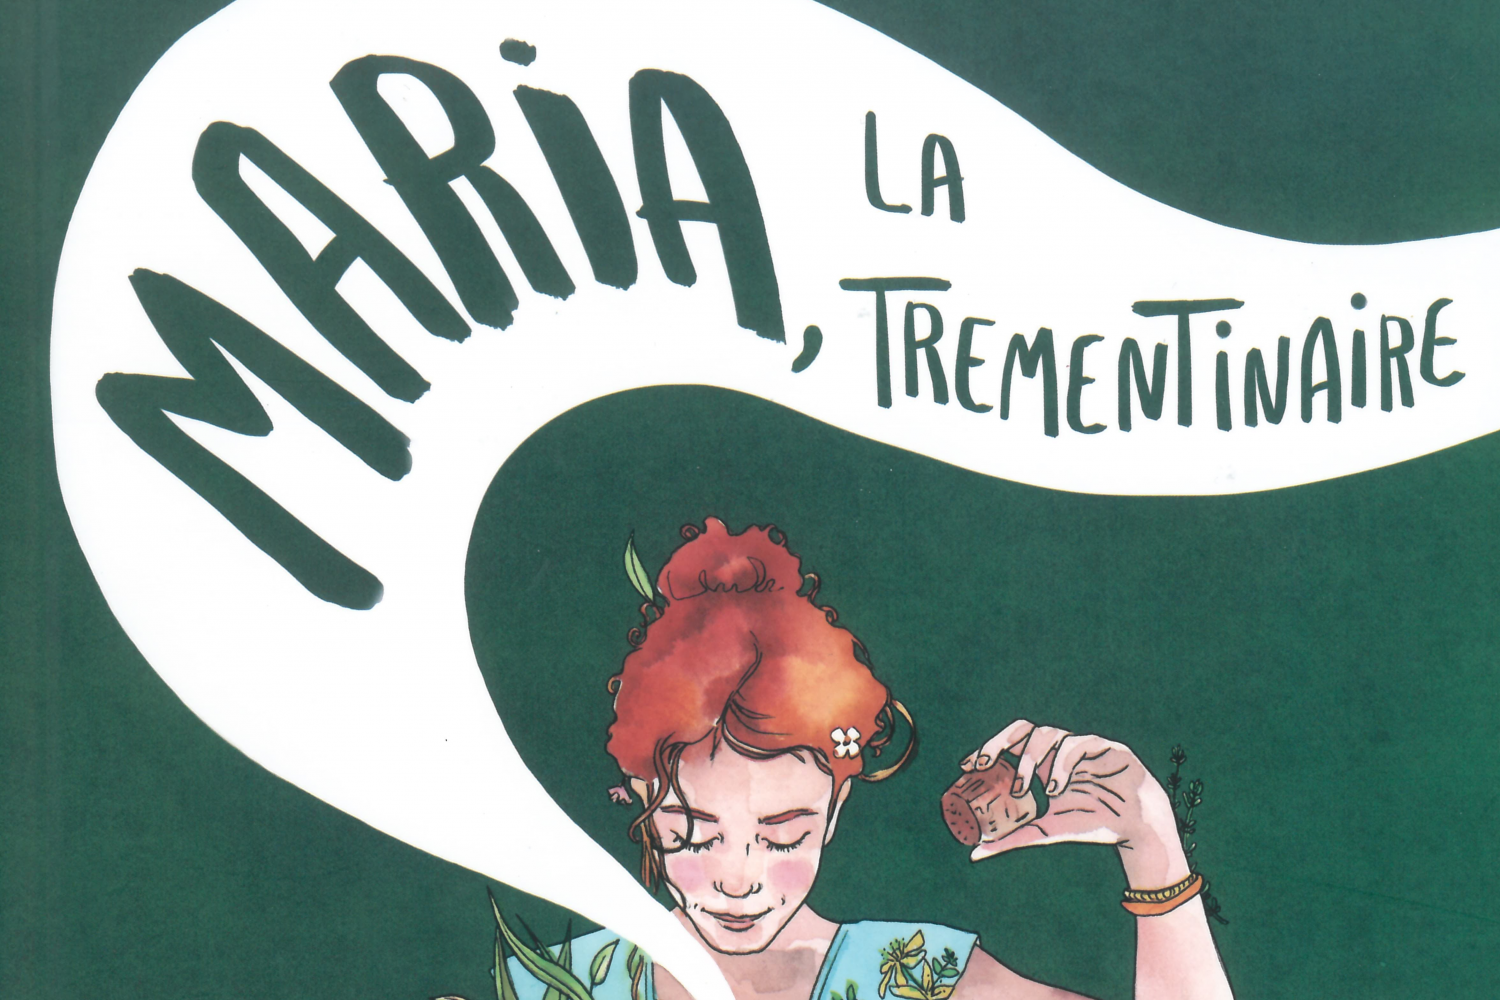 Presentació del llibre "Maria, la trementinaire"